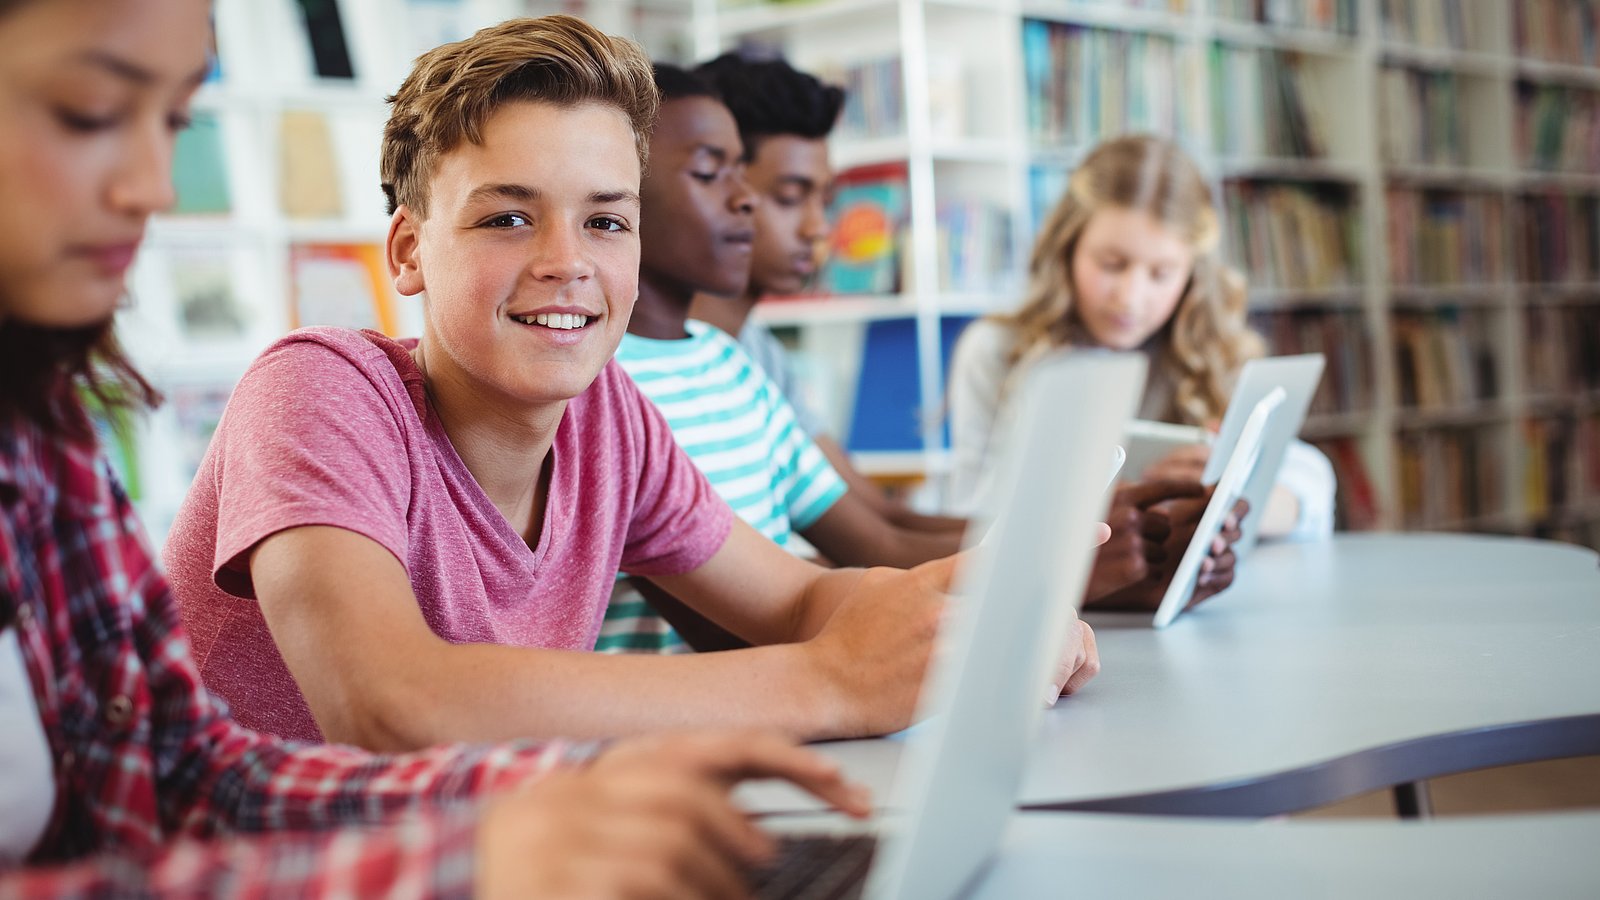 Jugendliche Schüler*innen sitzen in einer Schulbibliothek am Laptop. Ein Junge schaut lächelnd in die Kamera, alle anderen konzentrieren sich auf ihre Arbeit. 